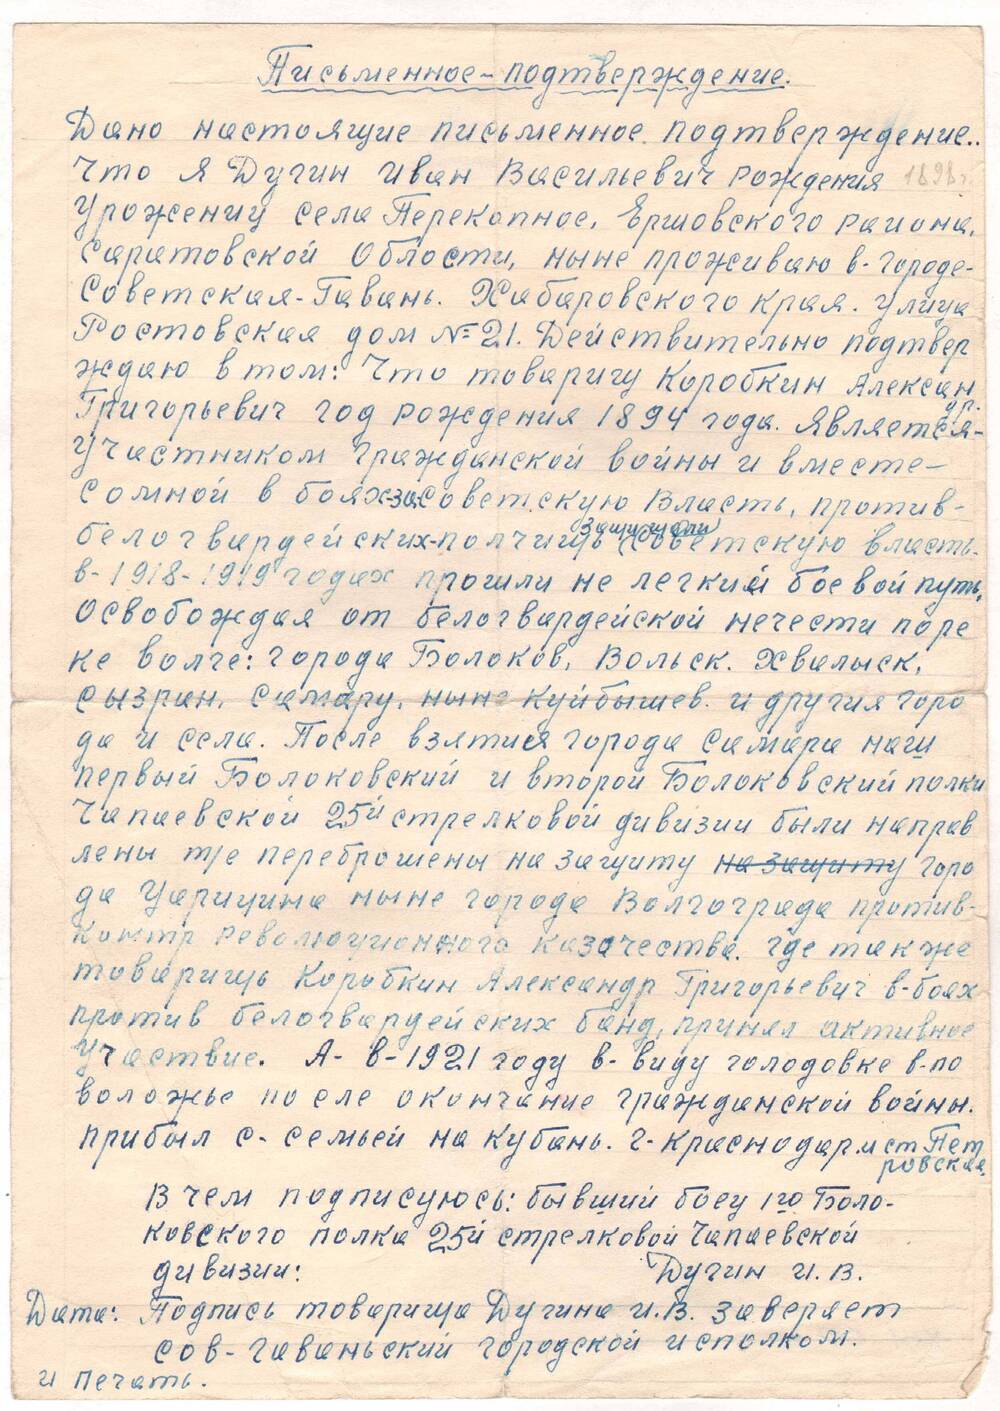 Письменное подтверждение Дугина И.В. о совместном участии с тов. Коробкиным А.Г. в гражданской войне.